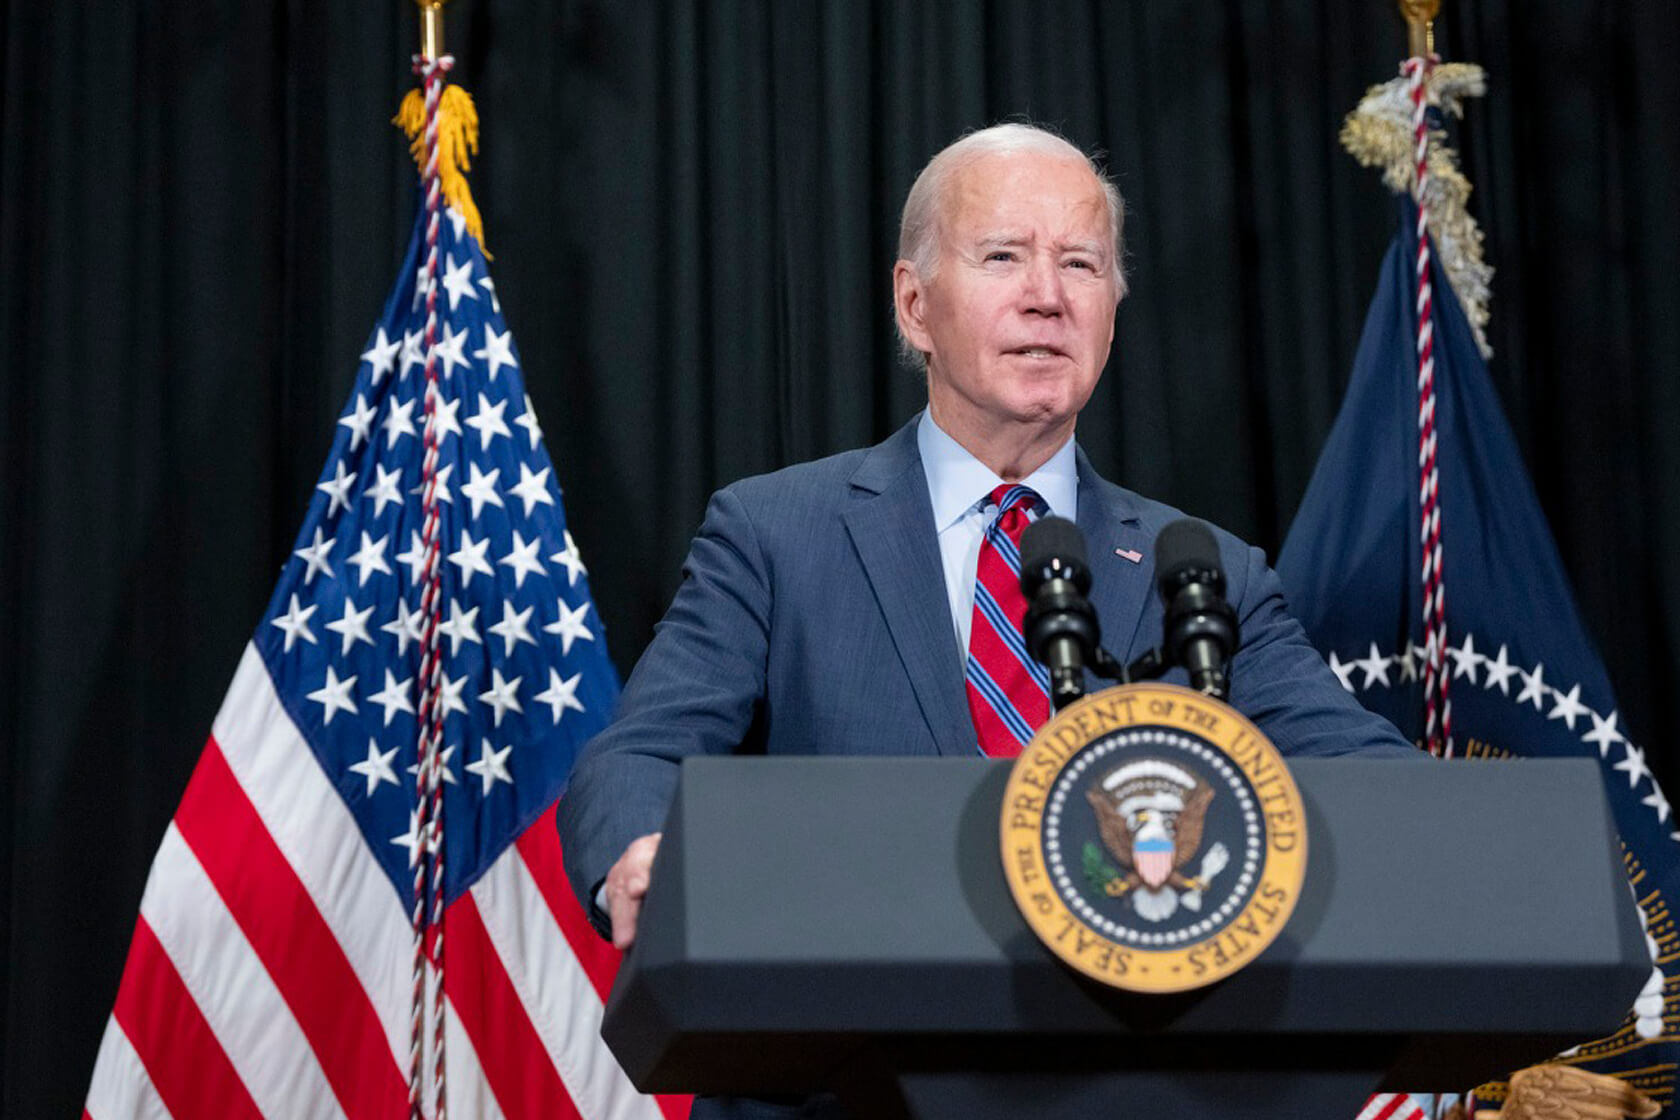 Image of President Biden at podium.